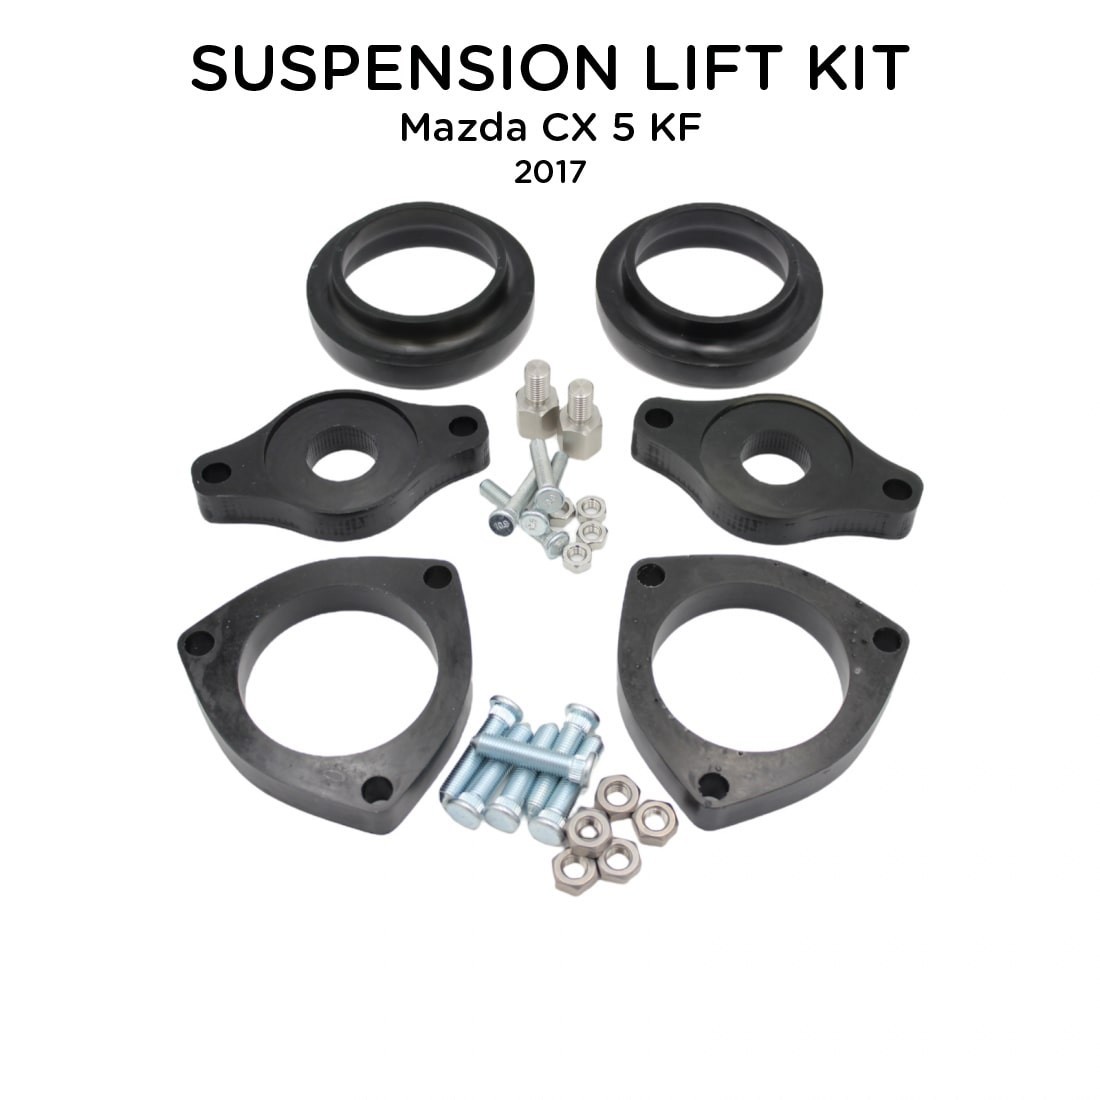 Suspension Lift Kit For Mazda CX 5 KF 2017